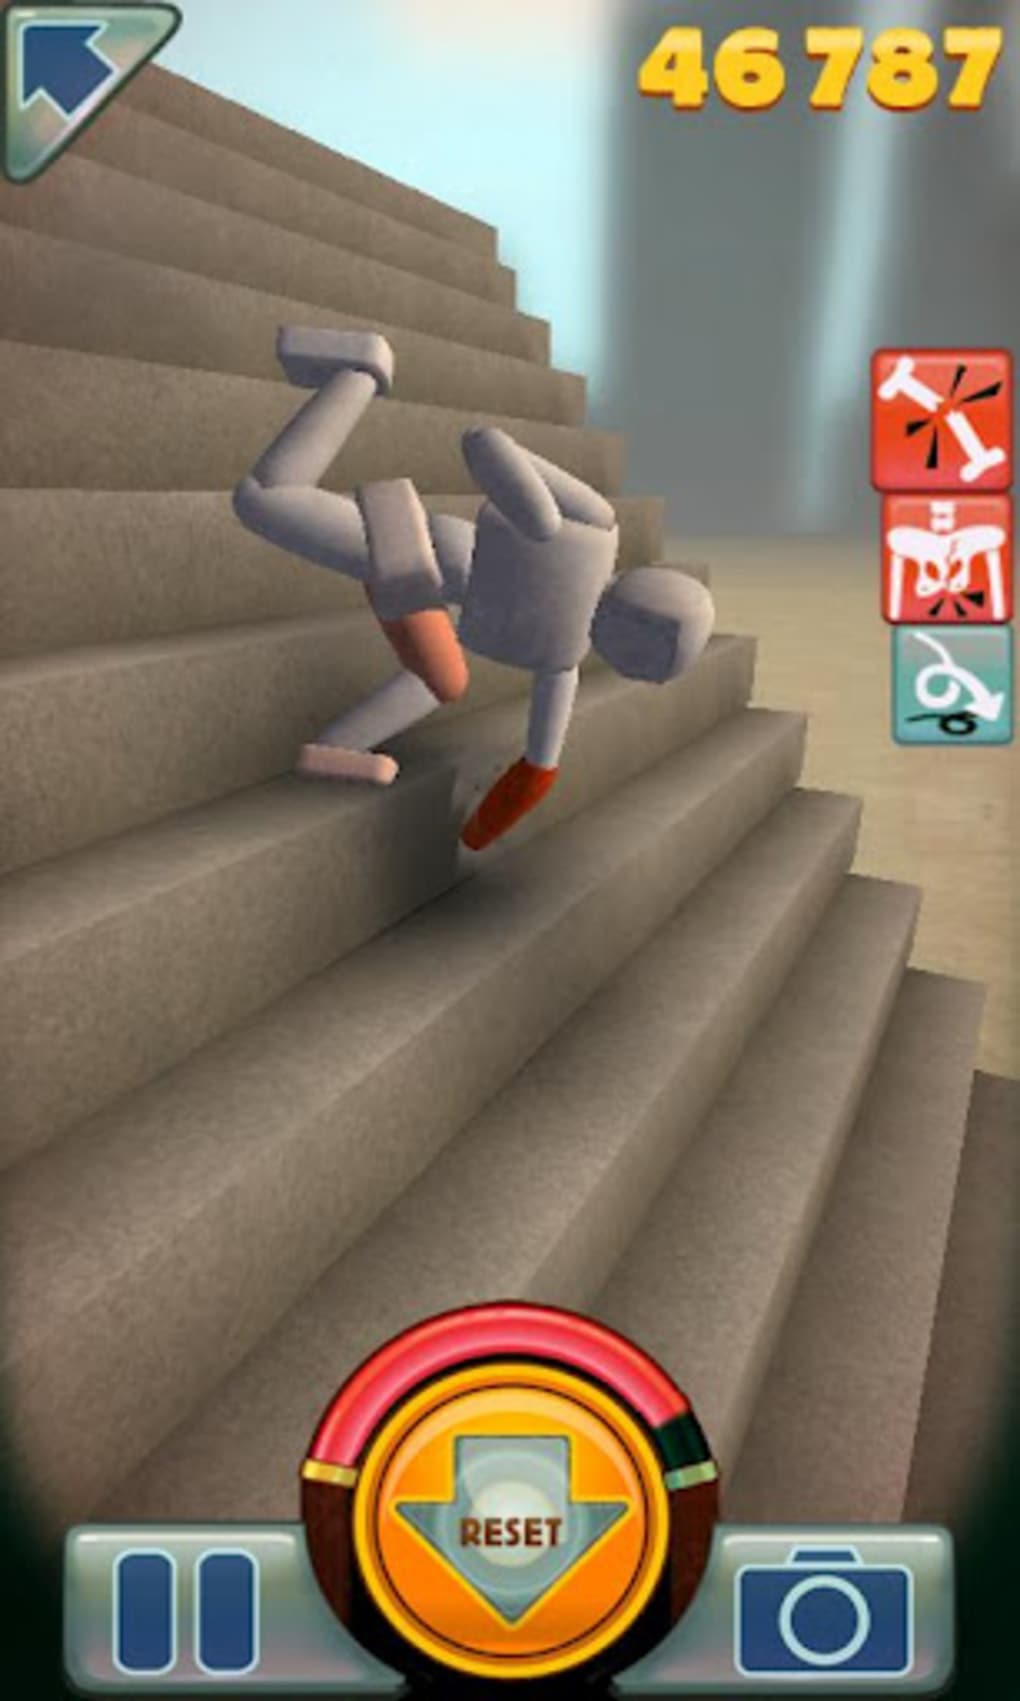 Игра кидать телефон. Игра Stair Dismount. Игра про деревянного человечка. Ступень у игры. Игра падение с лестницы.